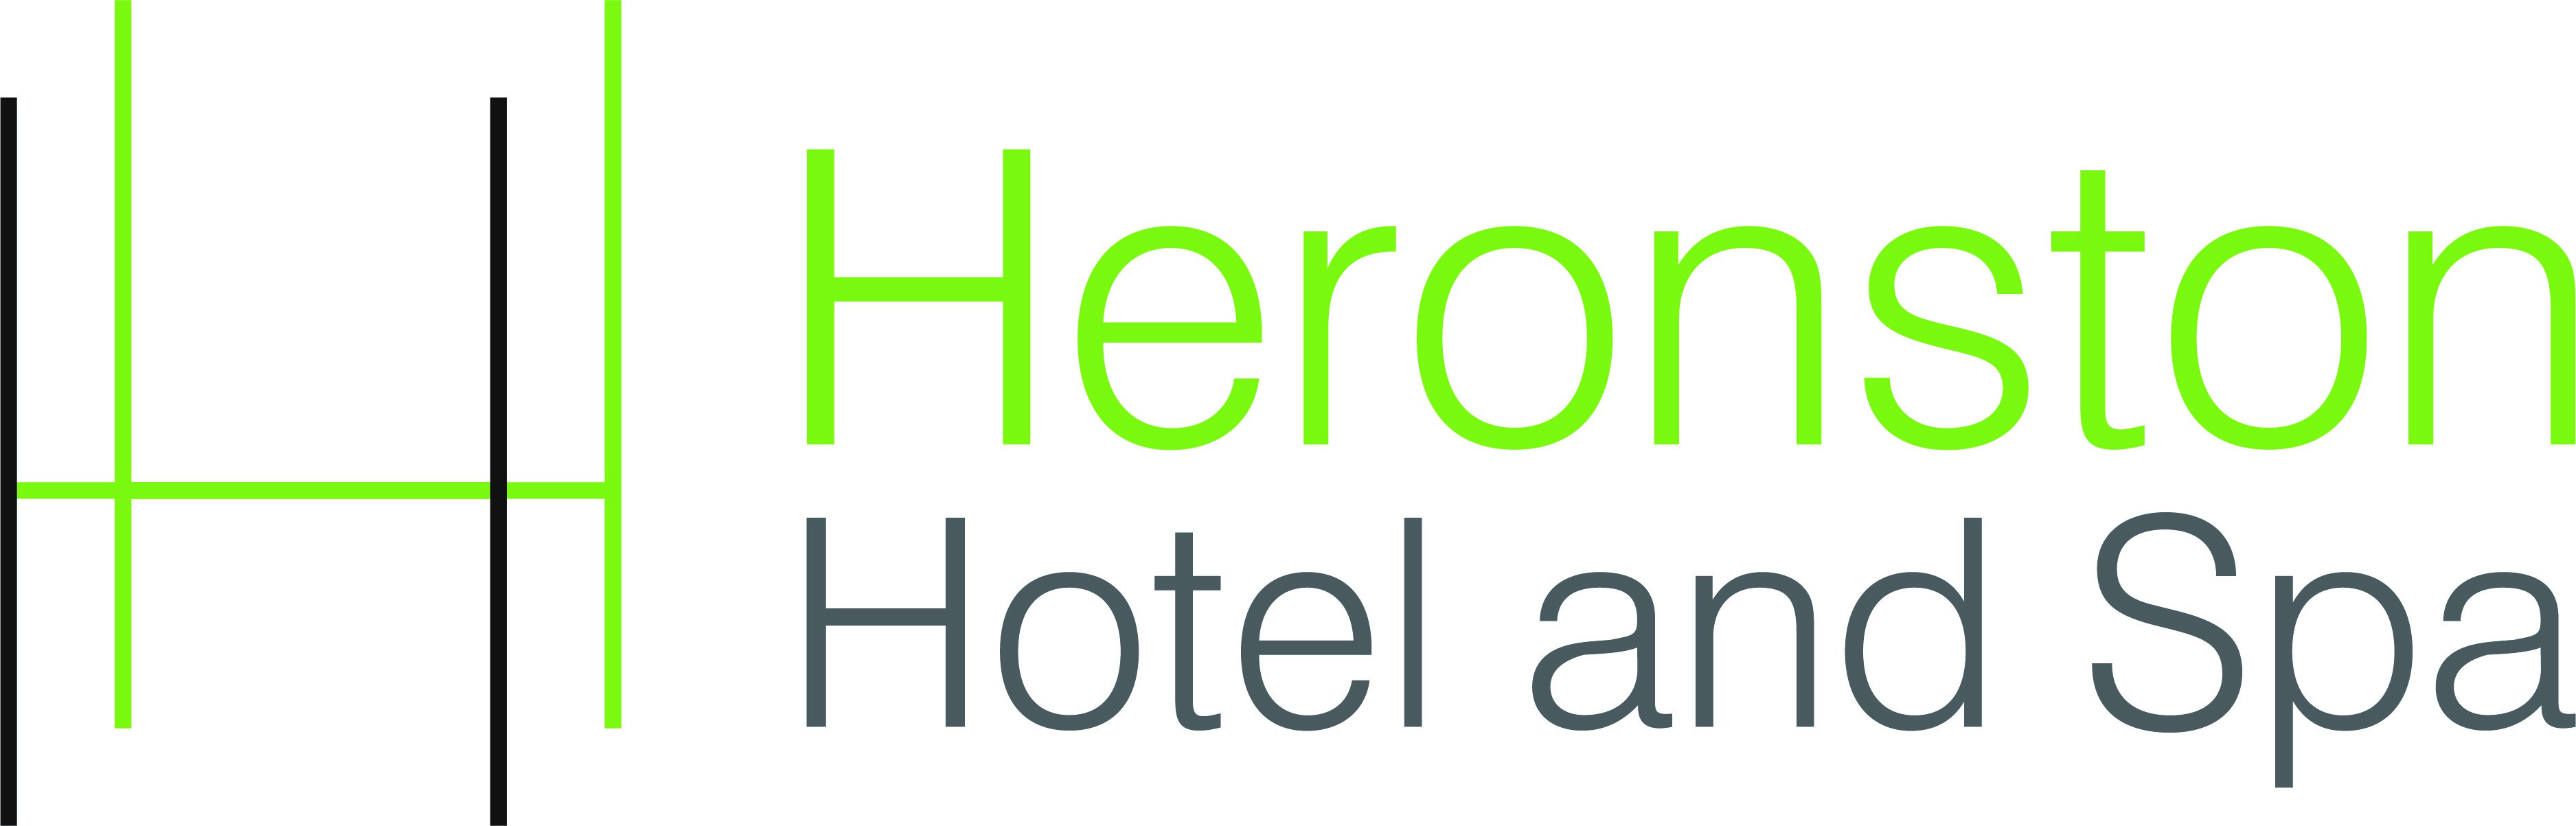 Best Western Heronston Hotel & Spa